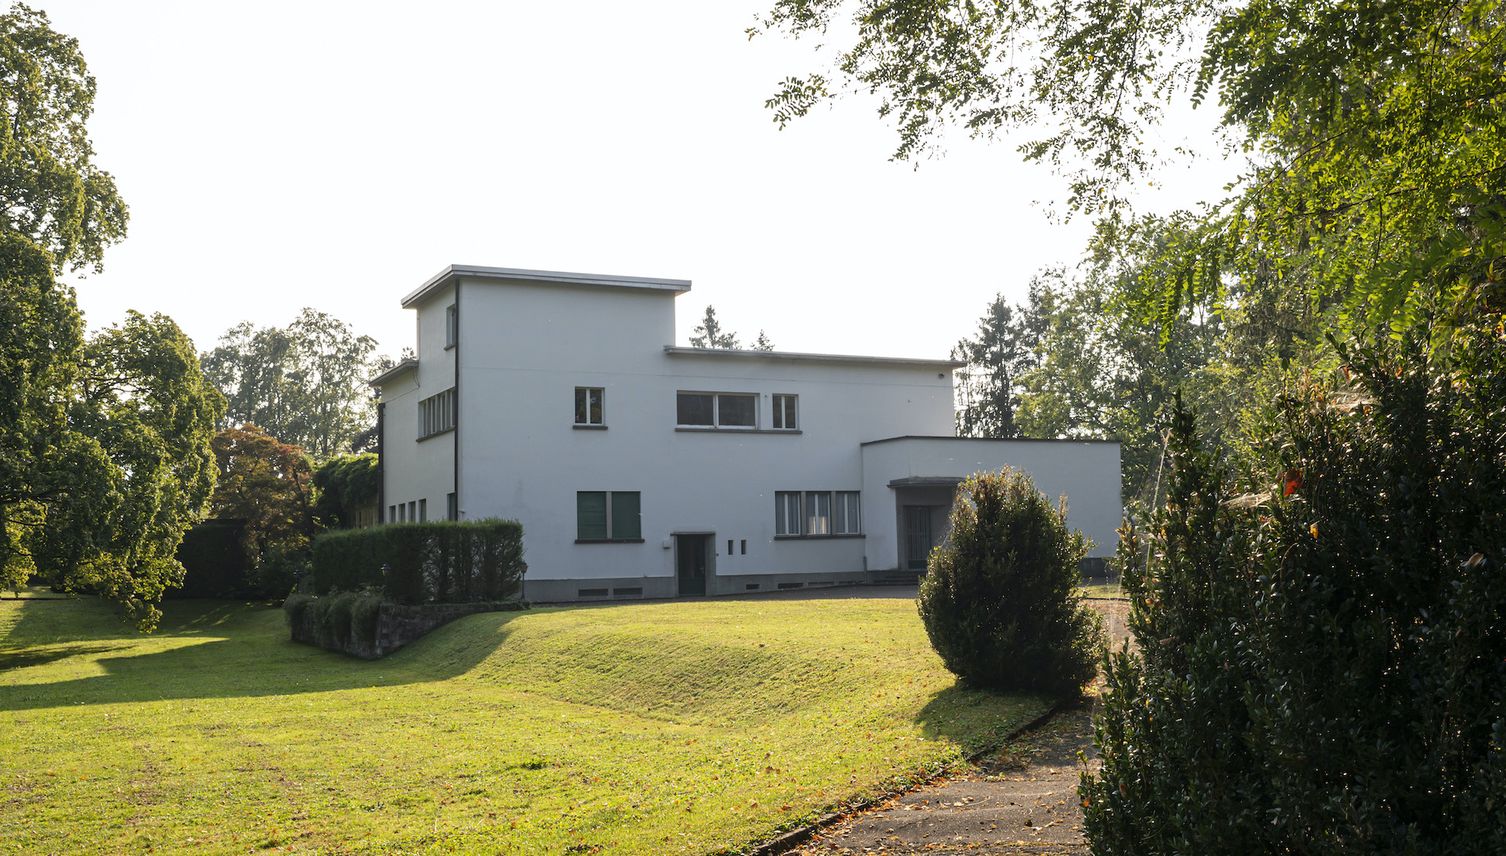 Luzern unterschreibt Vertrag für Rachmaninoff-Villa